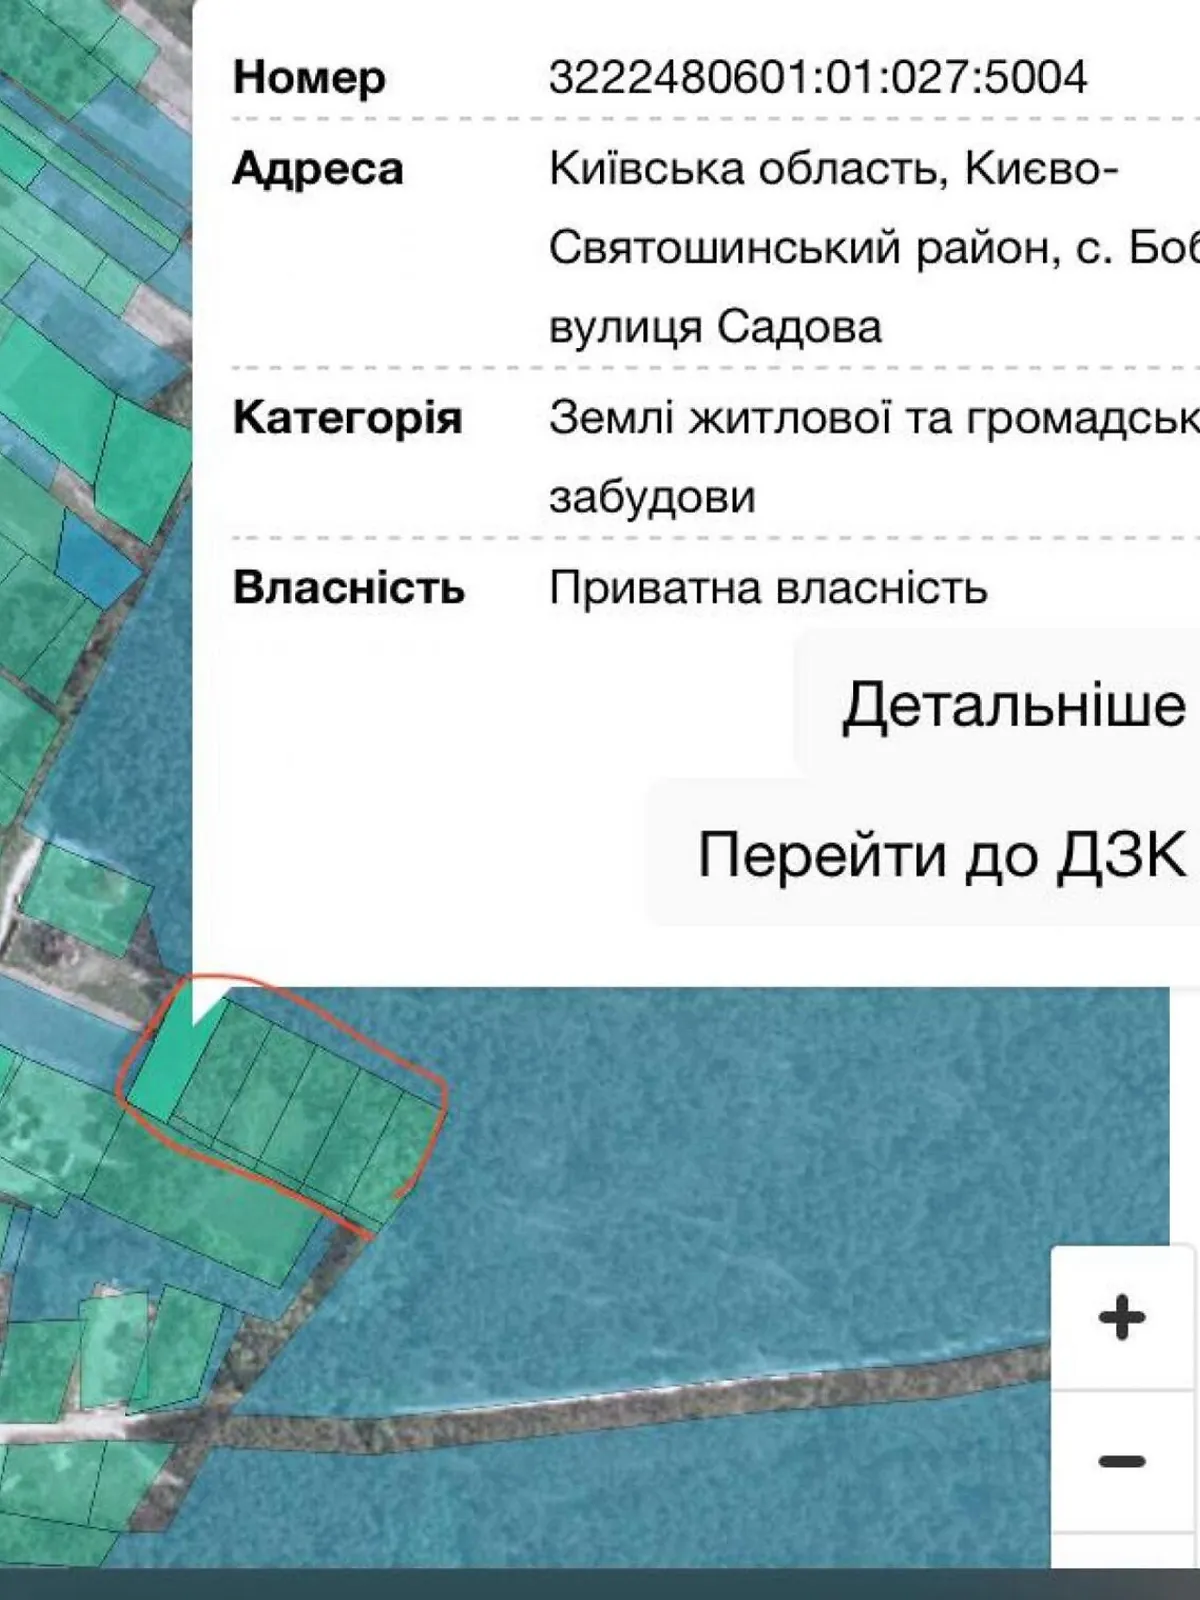 Продается земельный участок 87 соток в Киевской области - фото 3